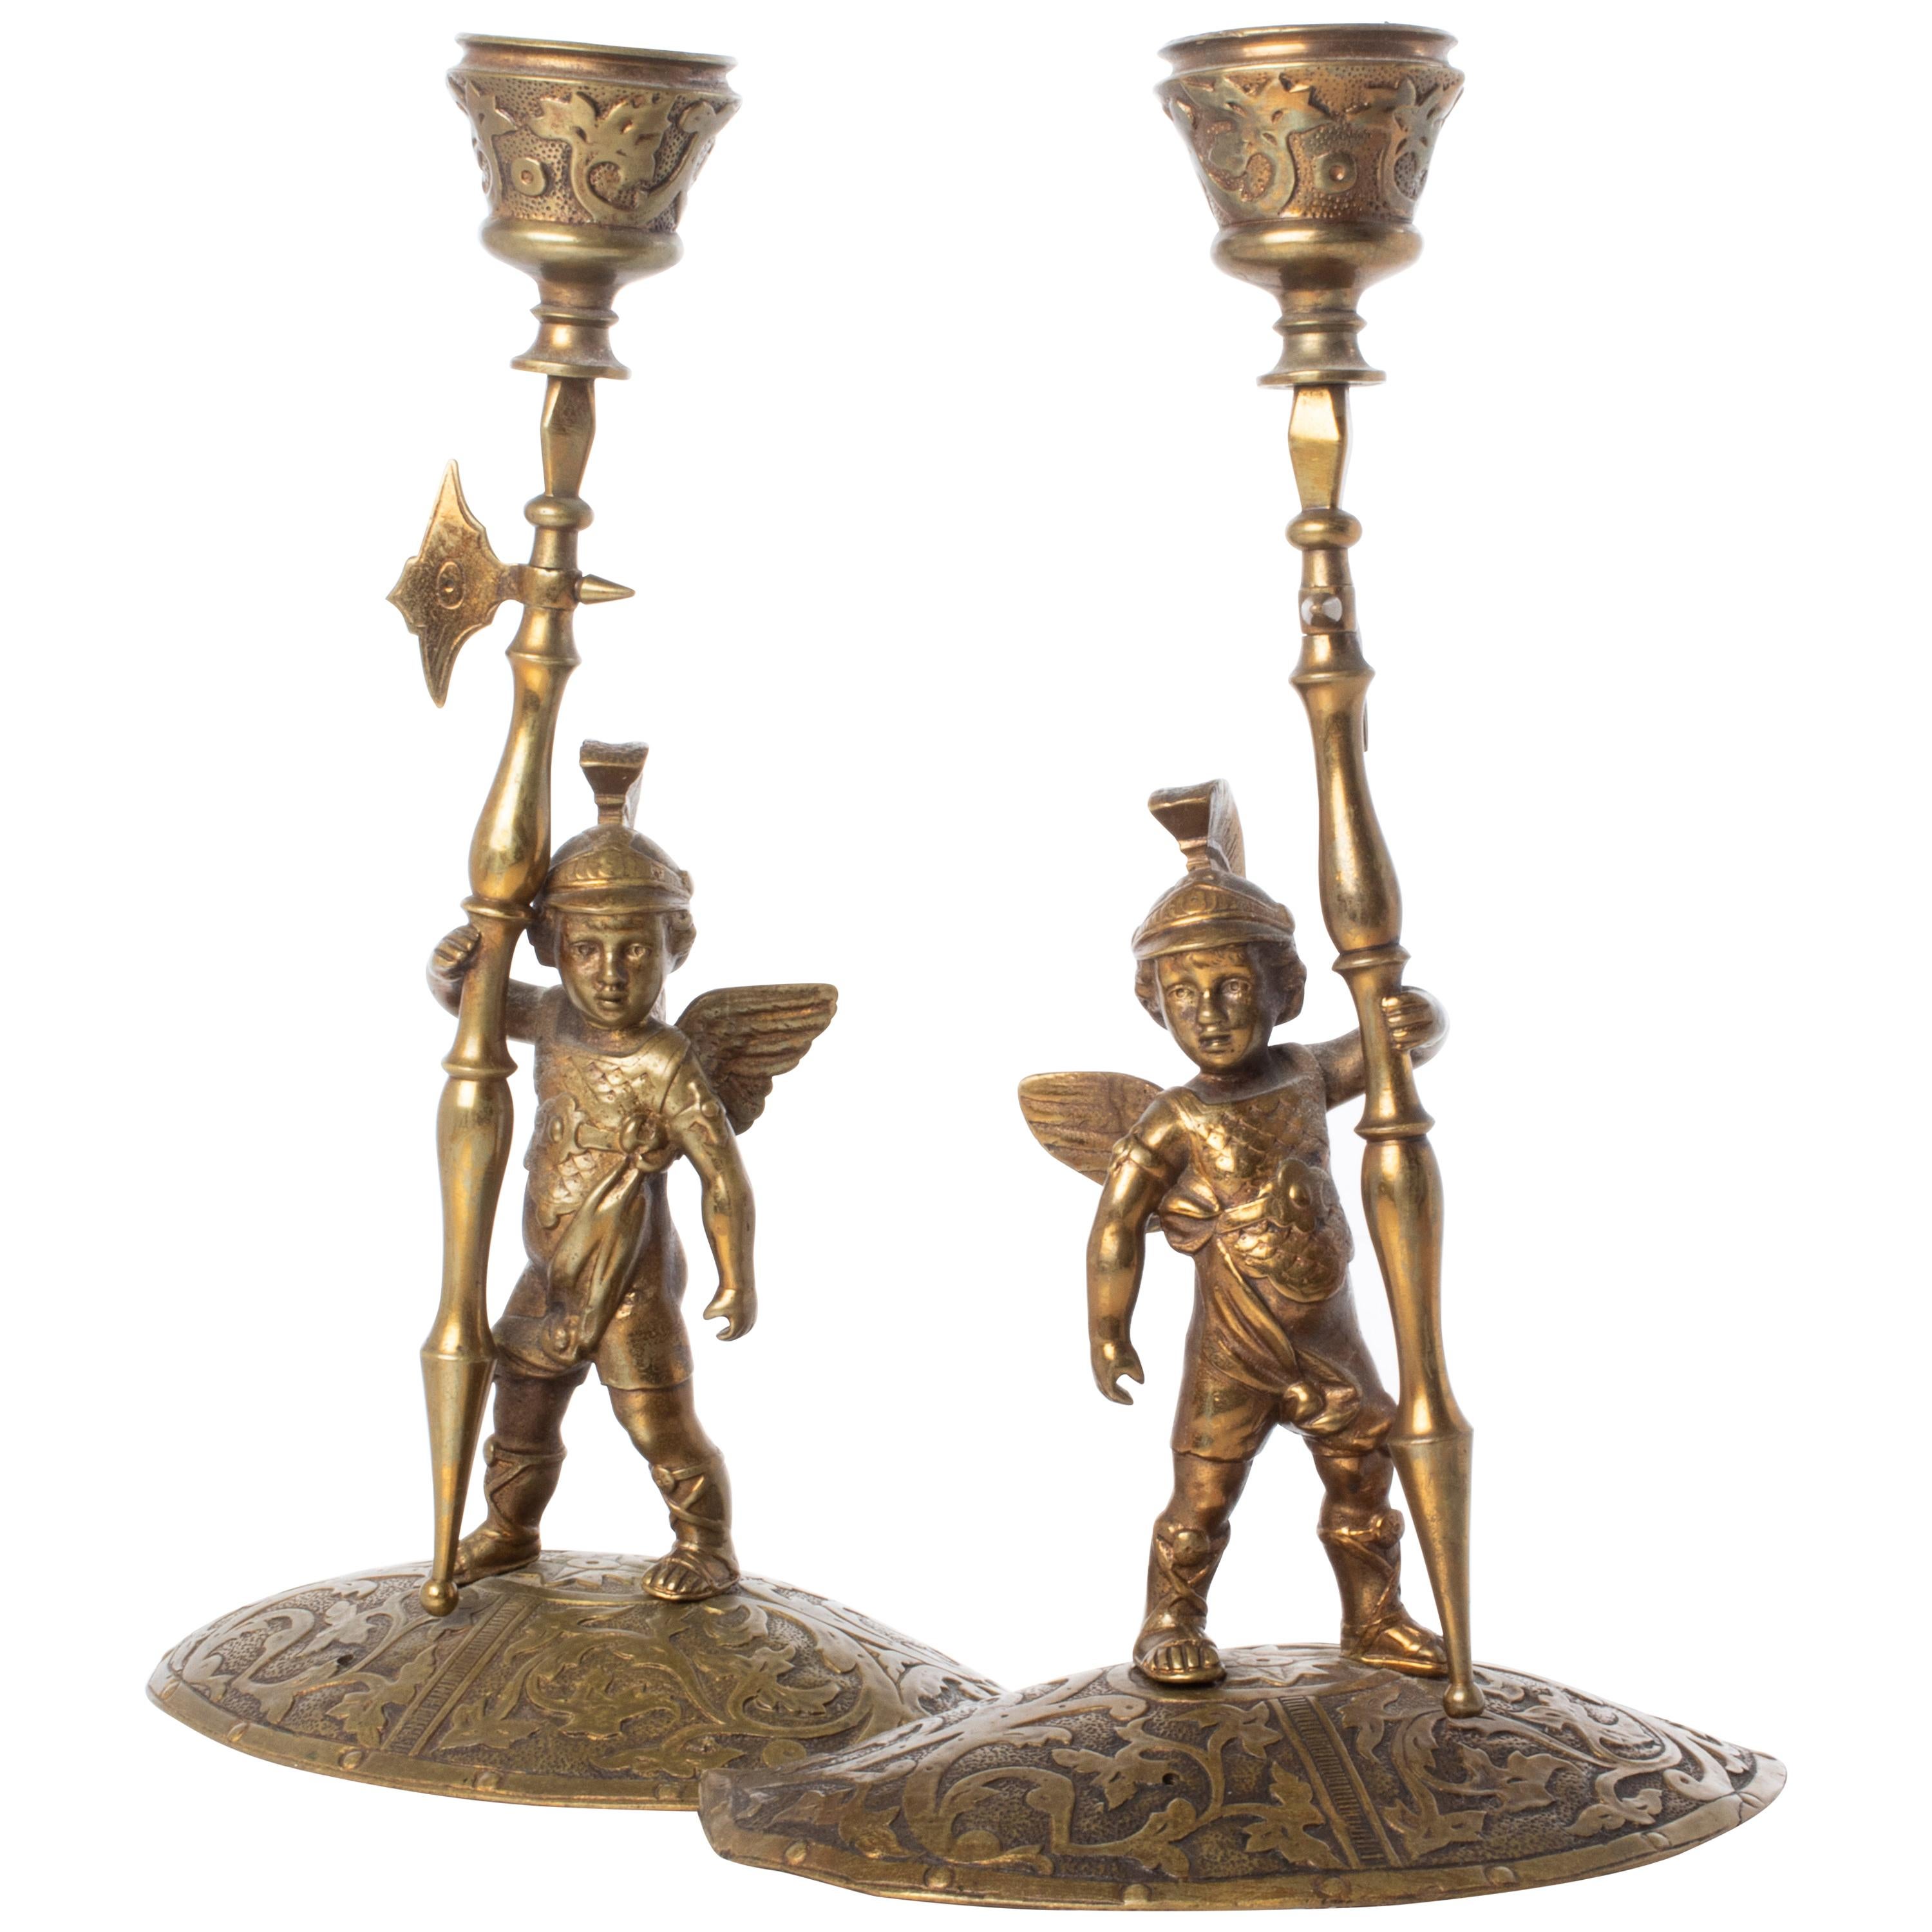 Chandeliers en bronze représentant une figure de gladiateur allégorique de style néo-renaissance